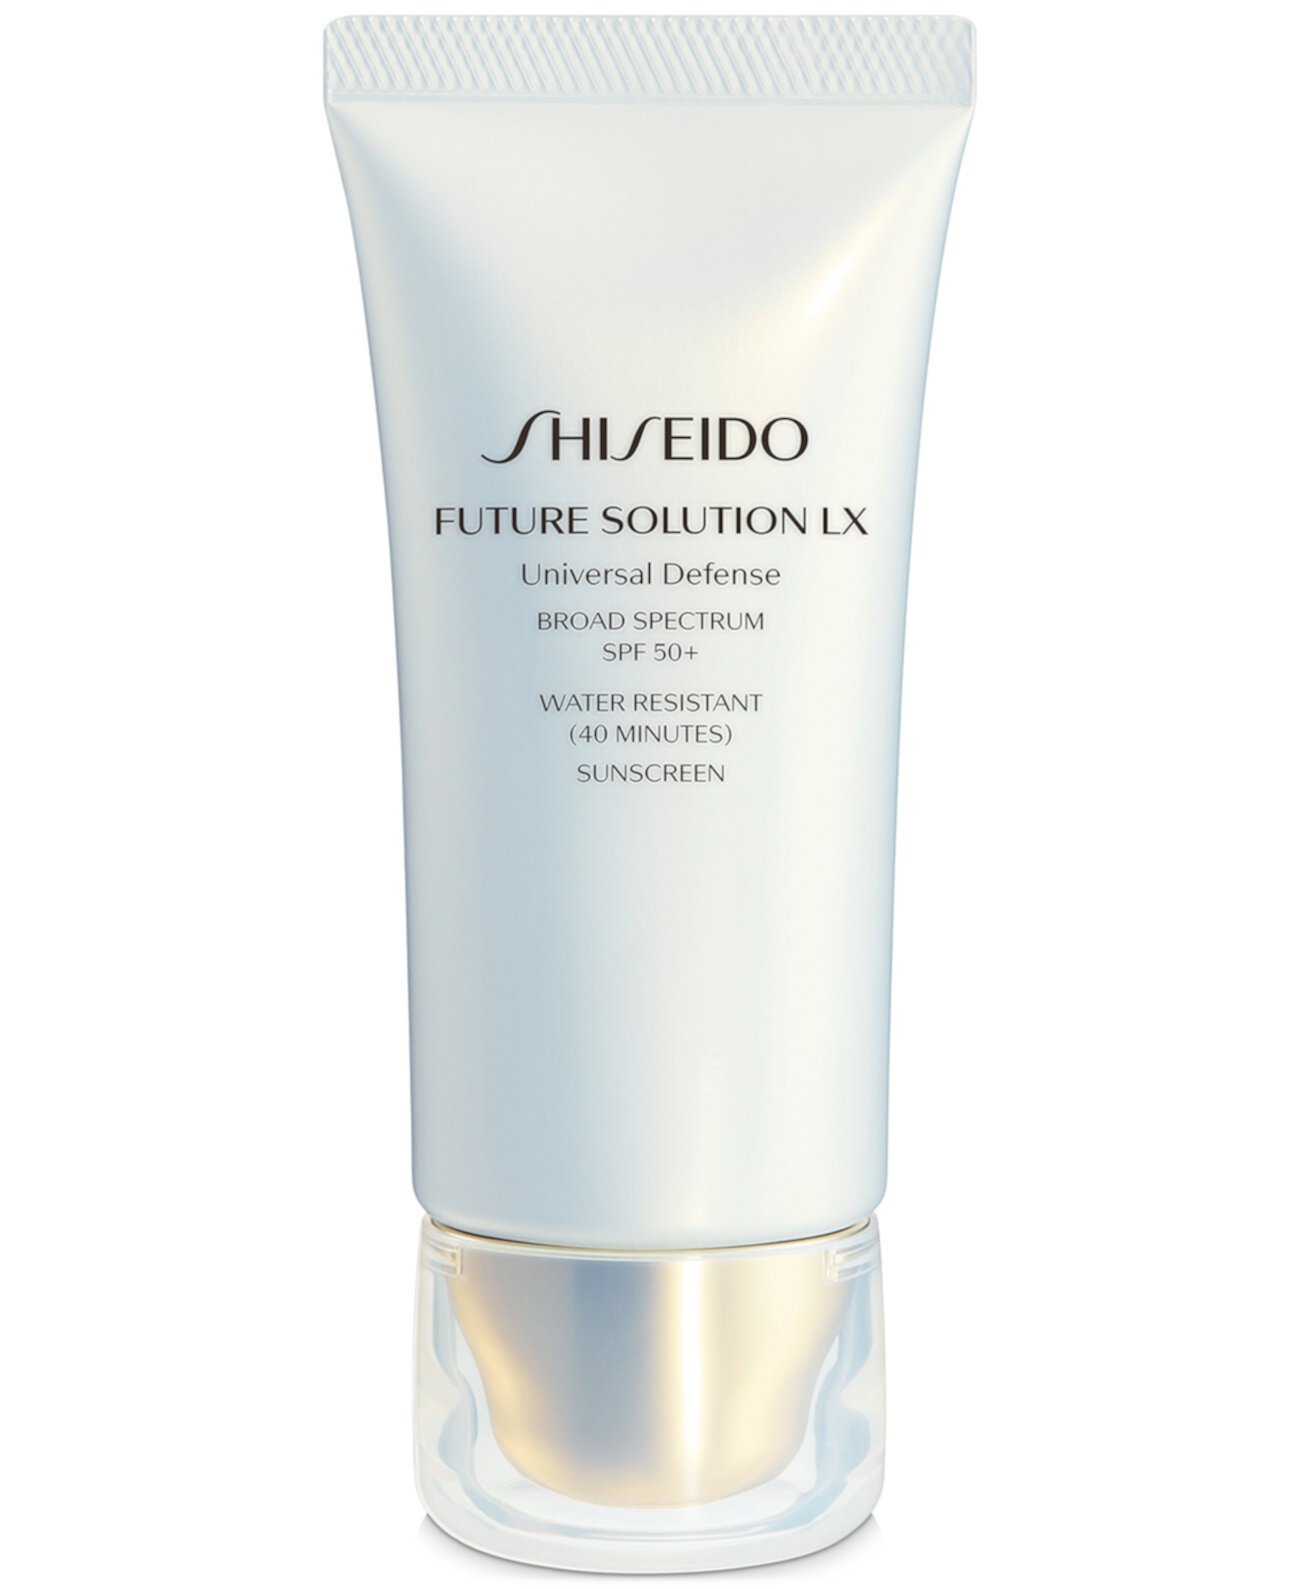 Future Solution LX Универсальный защитный солнцезащитный крем широкого спектра SPF 50+, 1,7 унции. Shiseido